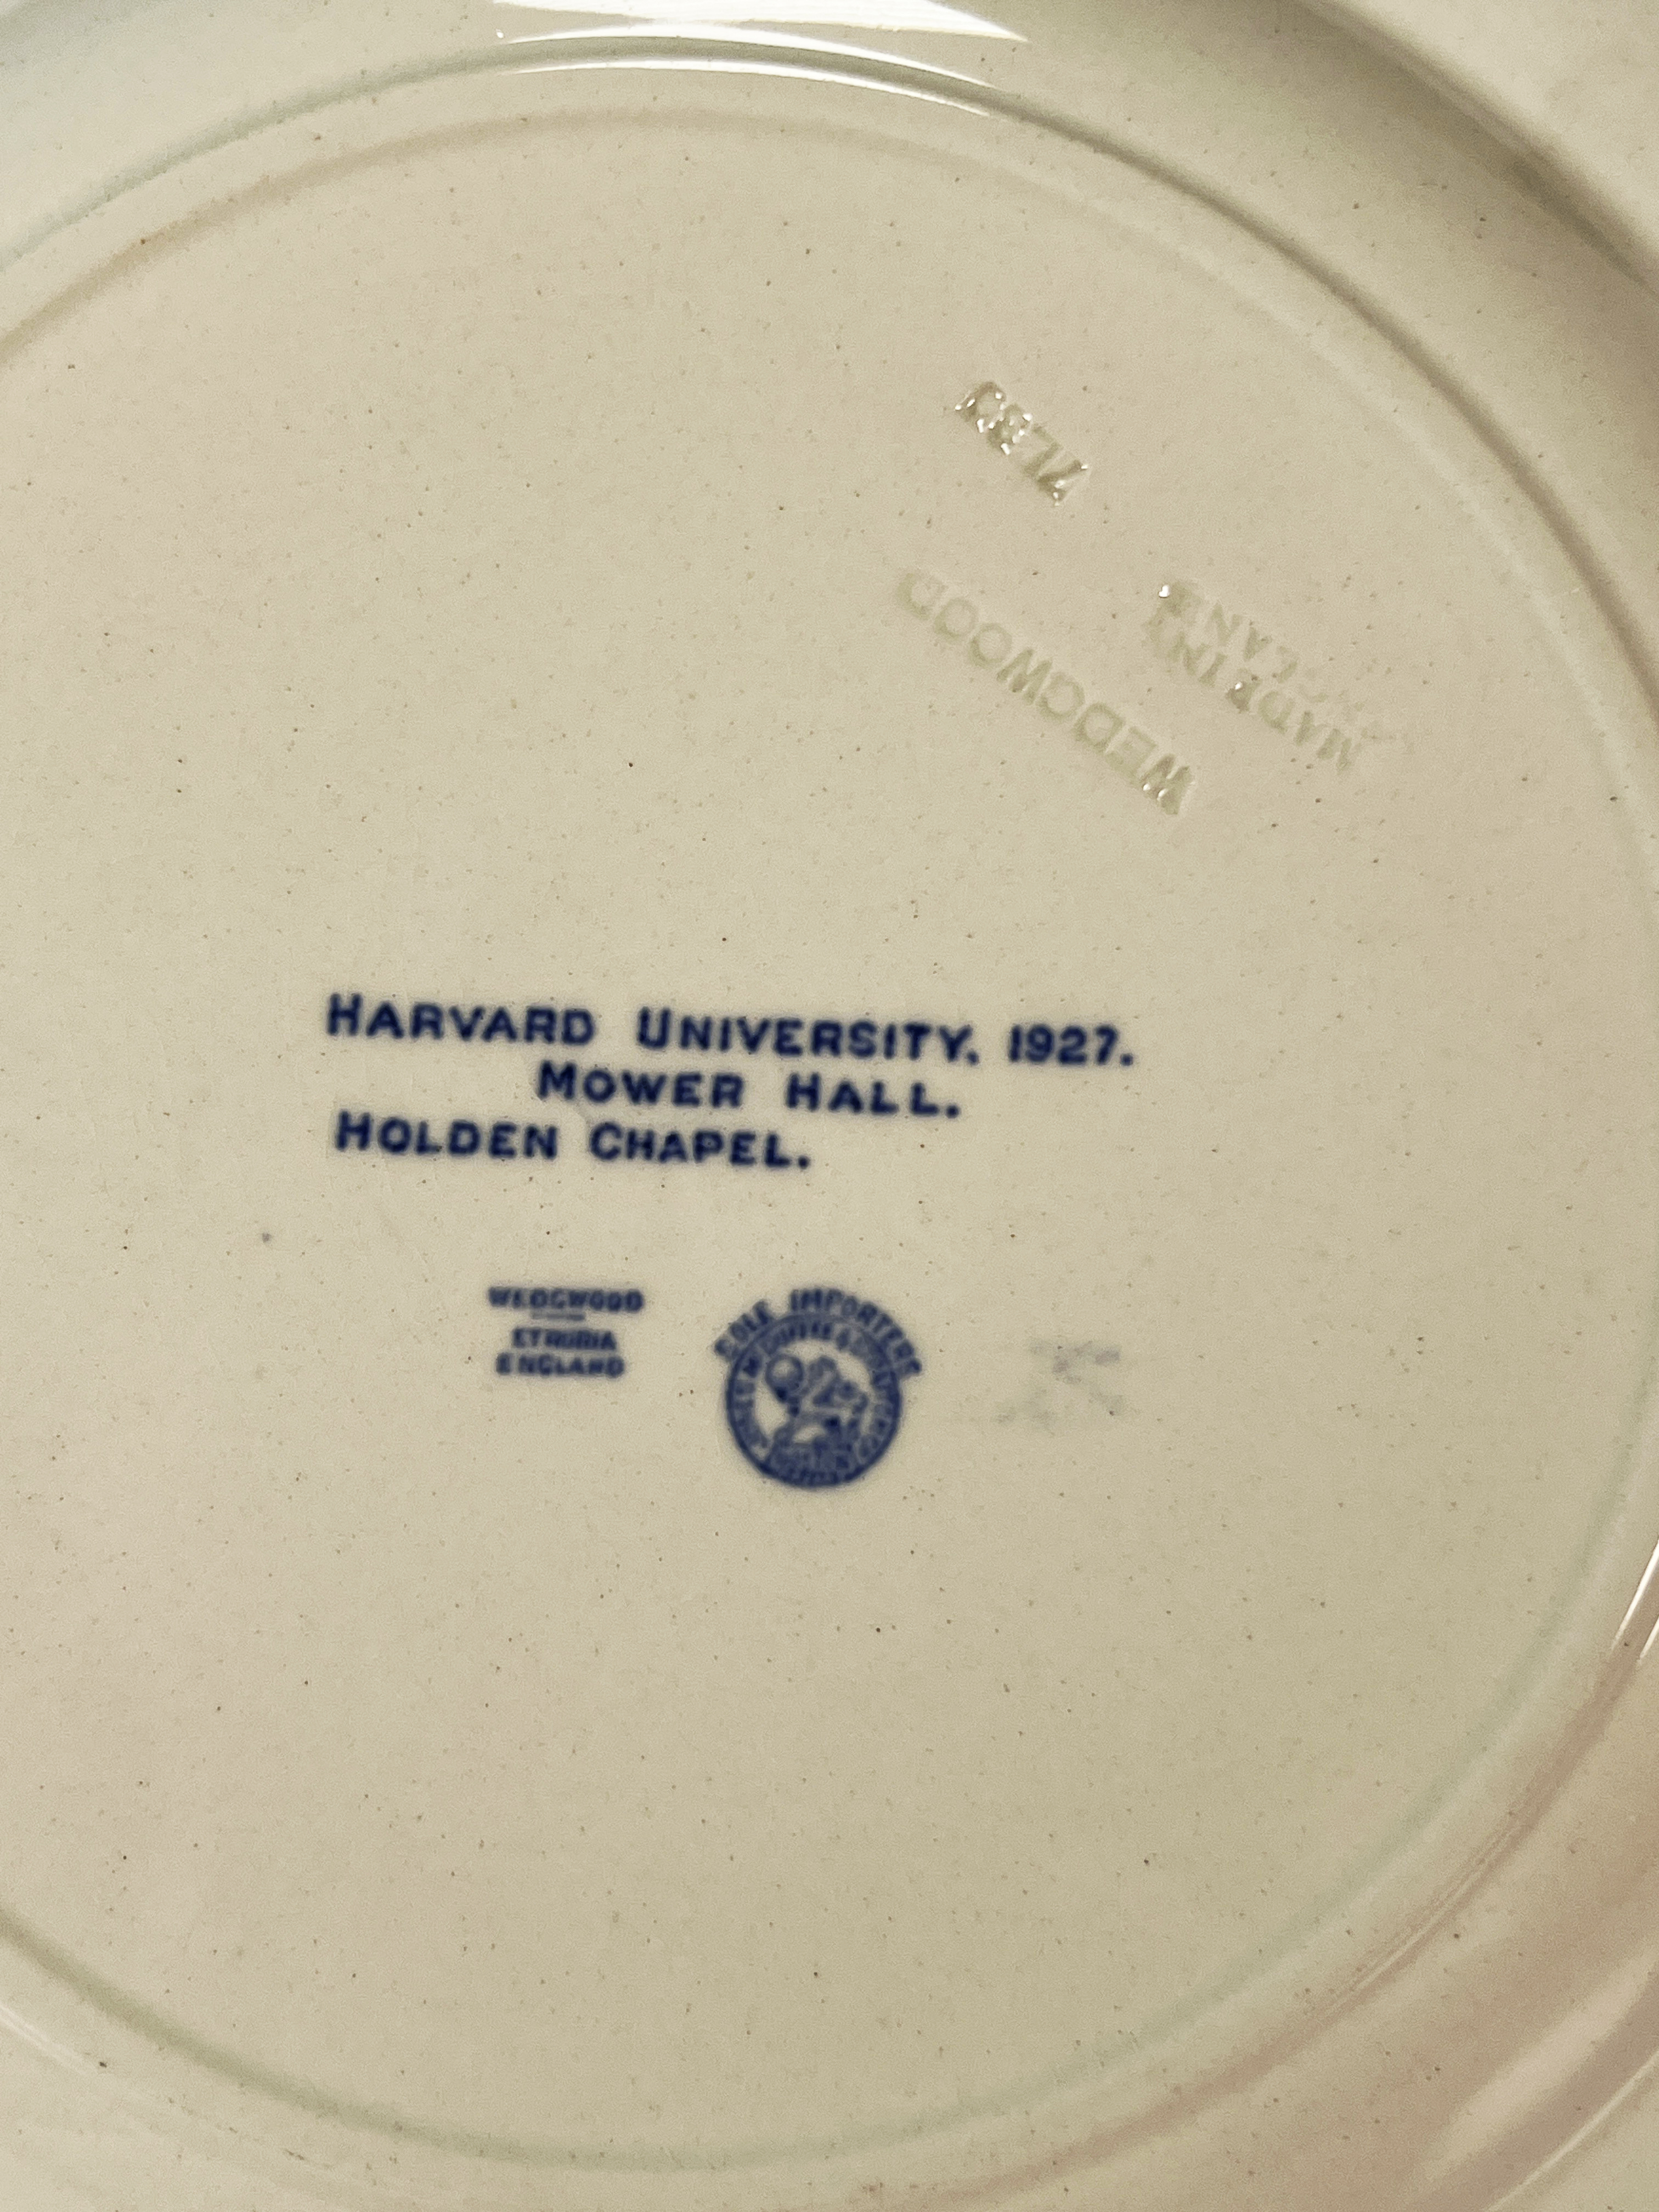 6 Harvard University 1927 Wedgwood Plates image 2